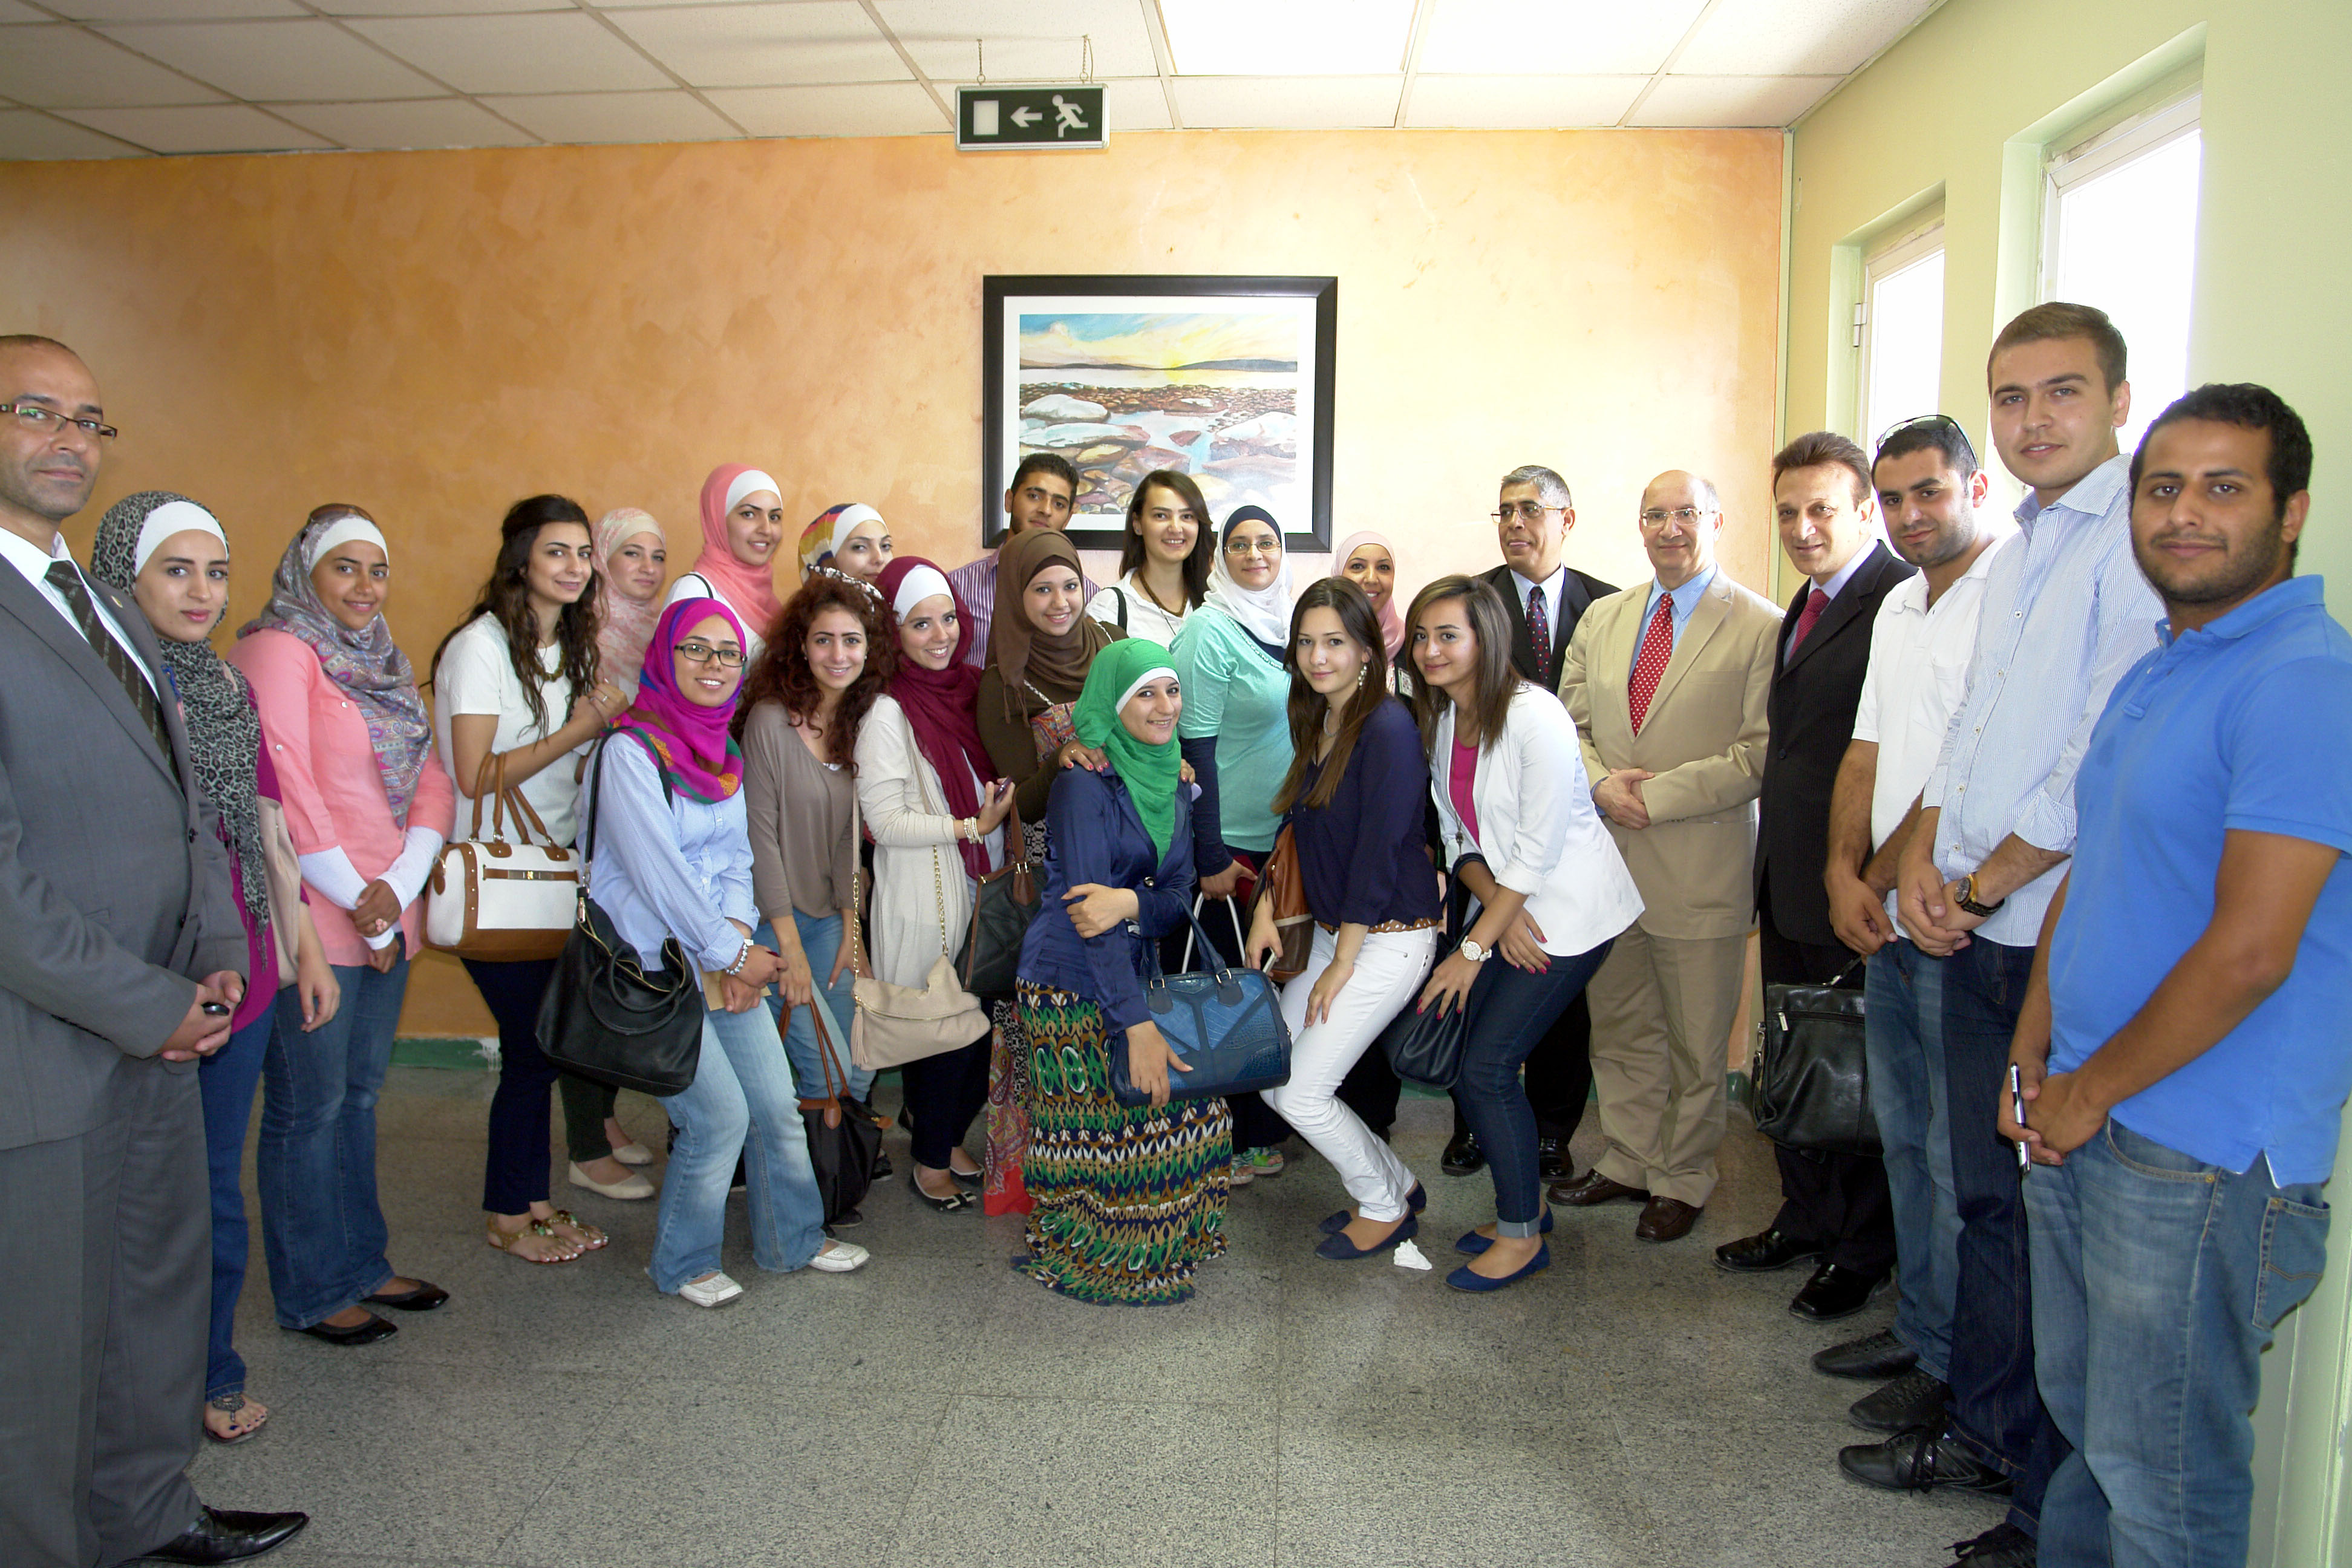 مُستشفى الجامعة الأردنية يكرم طلبة وأساتذة من كُليات الفنون والتصميم، والهندسة والتكنولوجيا، وإدارة الأعمال في الجامعة الأردنية 